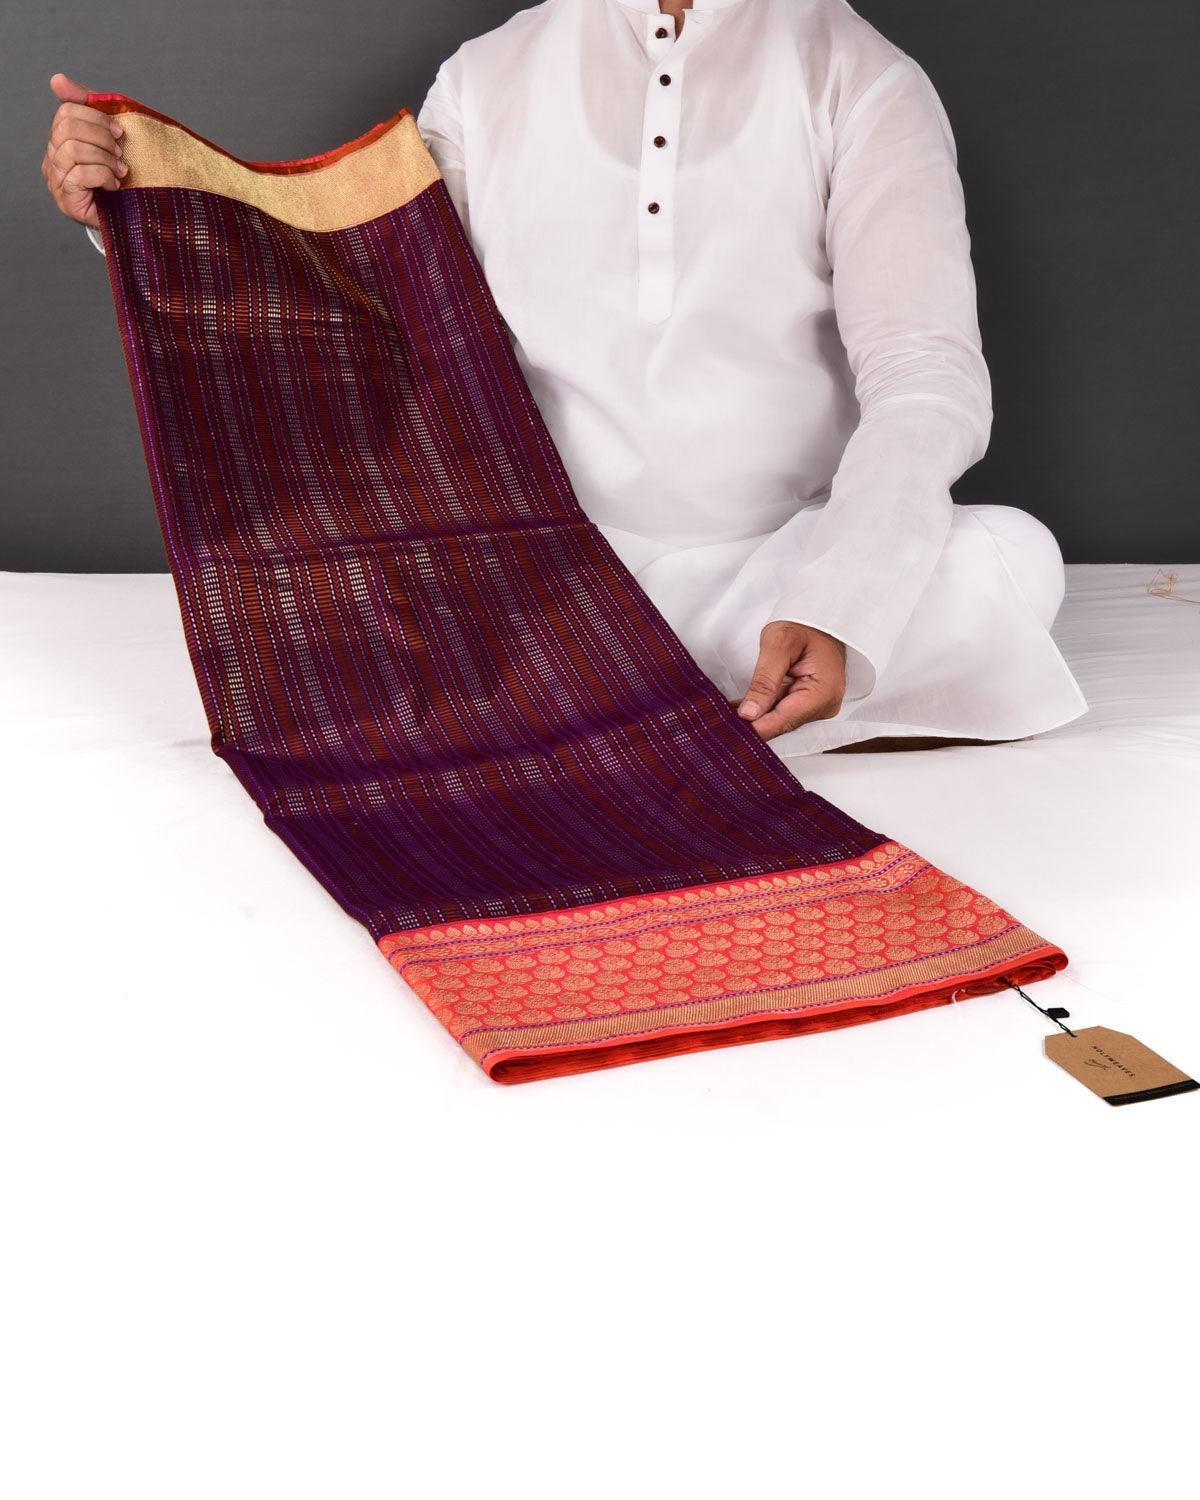 Shot Chocolate Brown Banarasi Resham Geometrical Stripes Brocade Handwoven Katan Silk Saree - By HolyWeaves, Benares